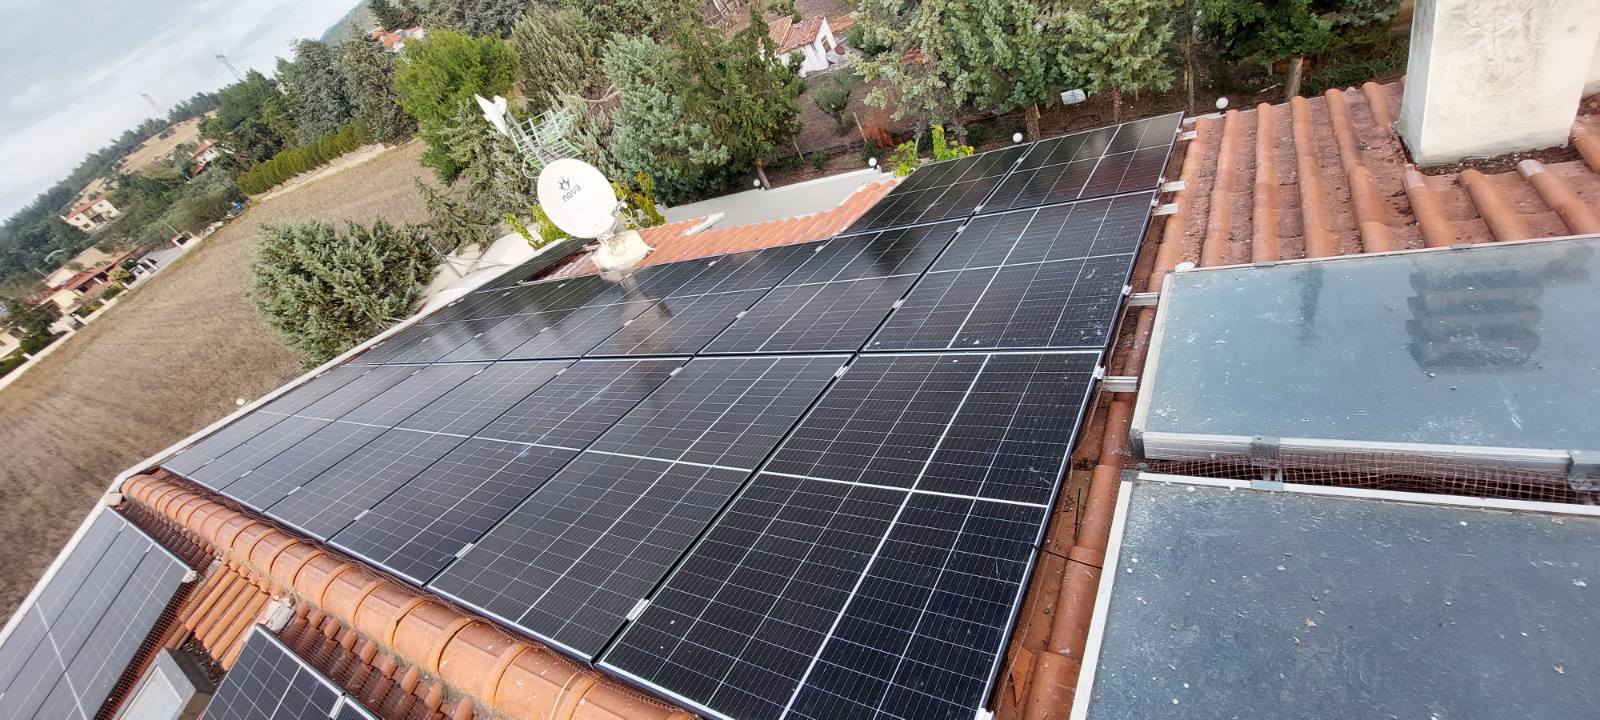 New ecosun home net metering project 25 kW - Θέρμη Θεσσαλονίκης